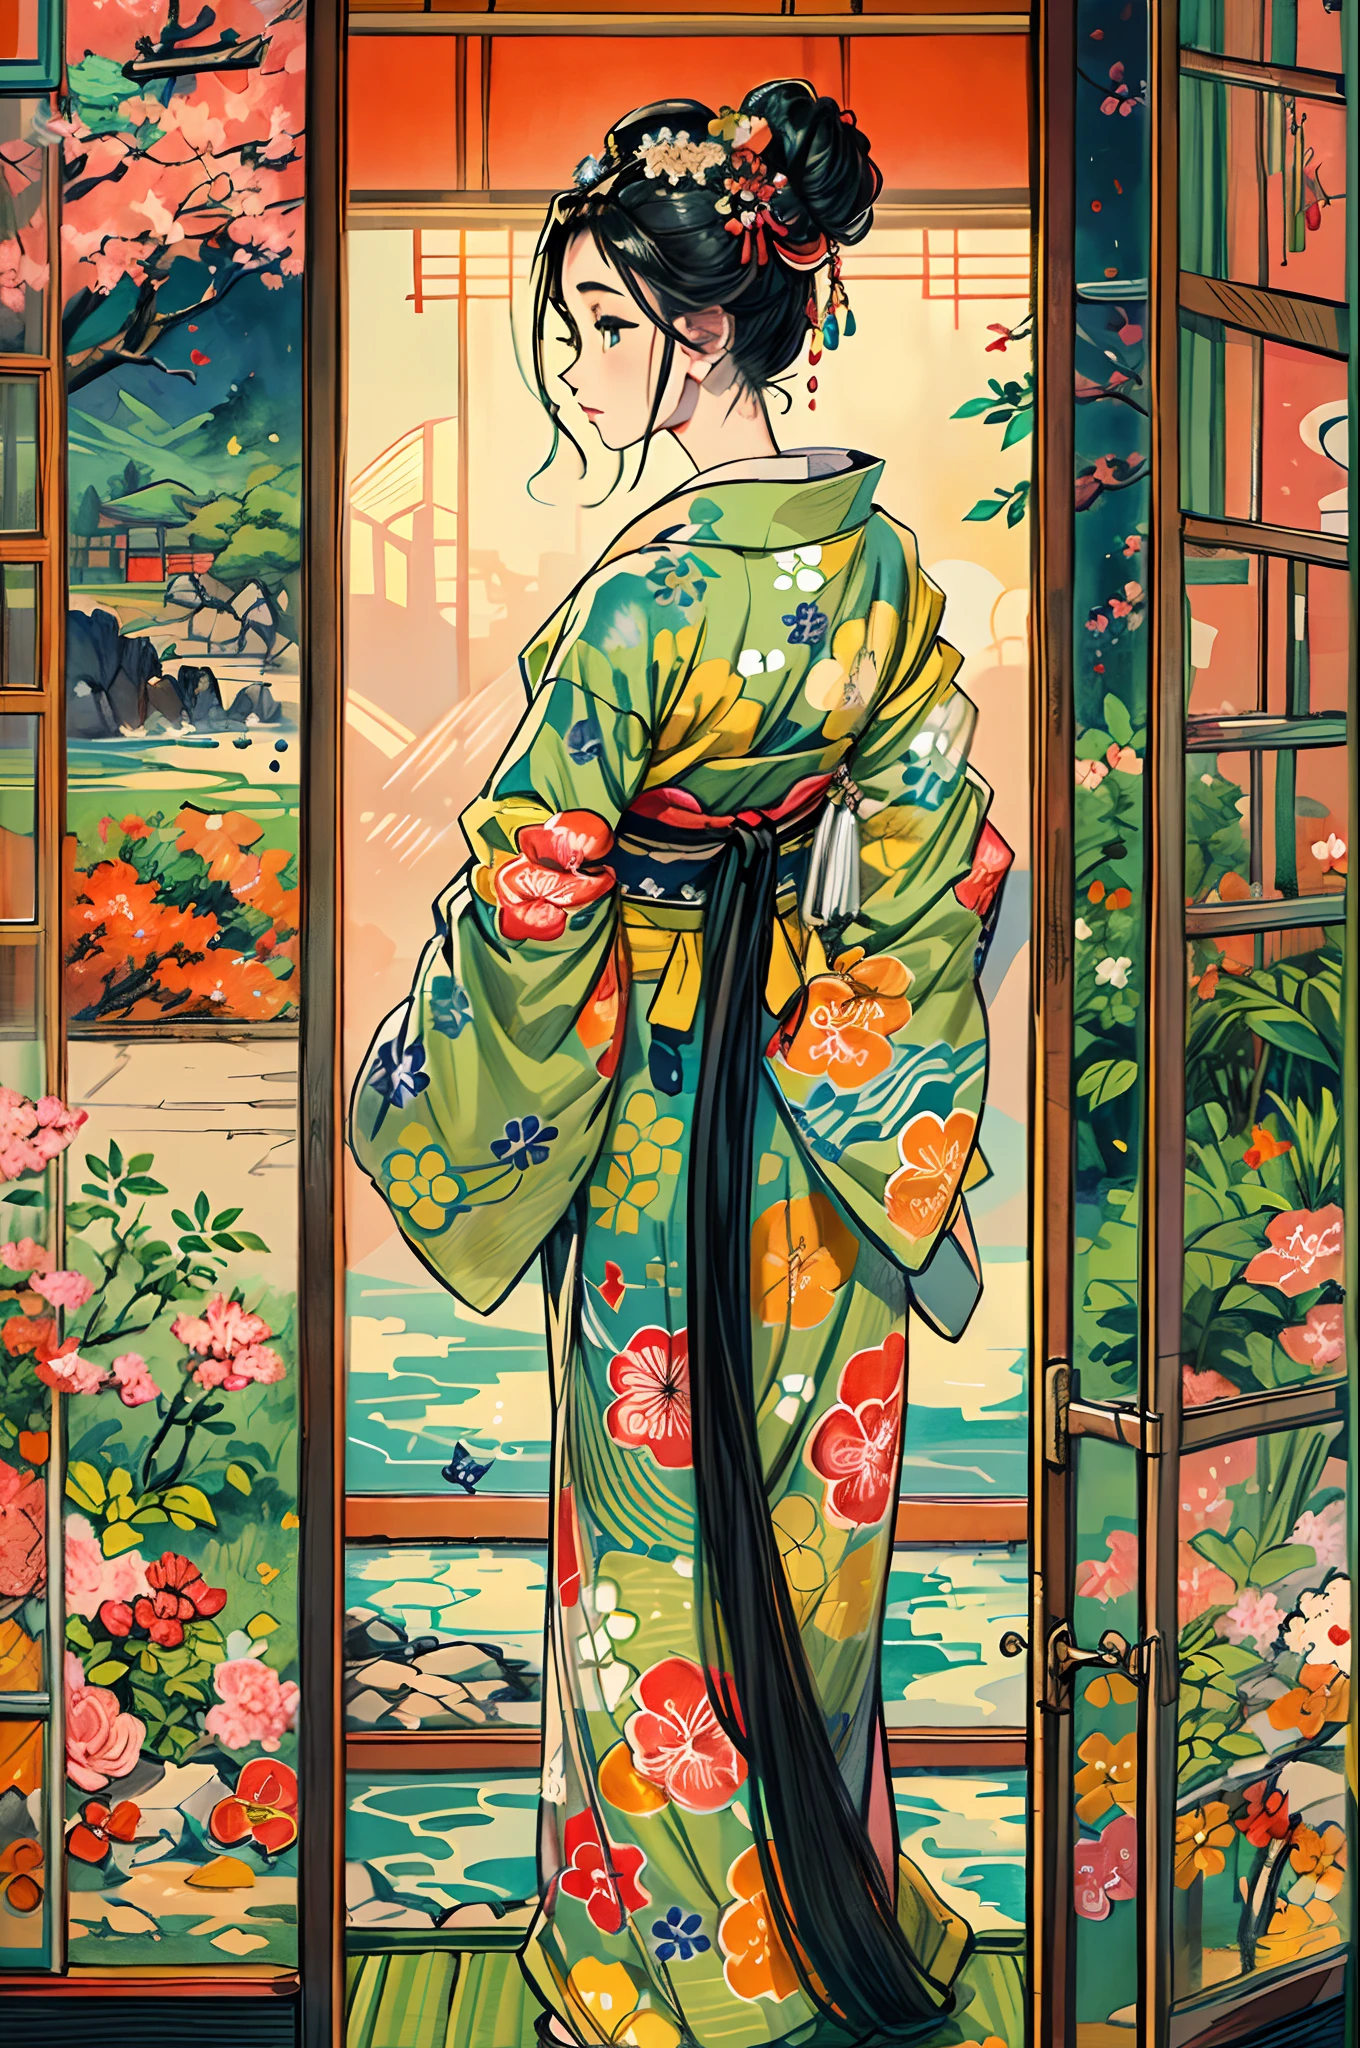 "(Un chef-d&#39;œuvre époustouflant d&#39;une qualité irréprochable:1.5), capturé à partir d&#39;une vue latérale avant, avec des couleurs vives et saturées, une fille d&#39;une beauté à couper le souffle avec des cheveux noirs et un visage extrêmement détaillé, vu d&#39;un point de vue ascendant, vêtu d&#39;un kimono traditionnel, situé dans la beauté des paysages du Japon, entouré par l&#39;ambiance authentique des tatamis, avec une fenêtre ouverte encadrant la scène."